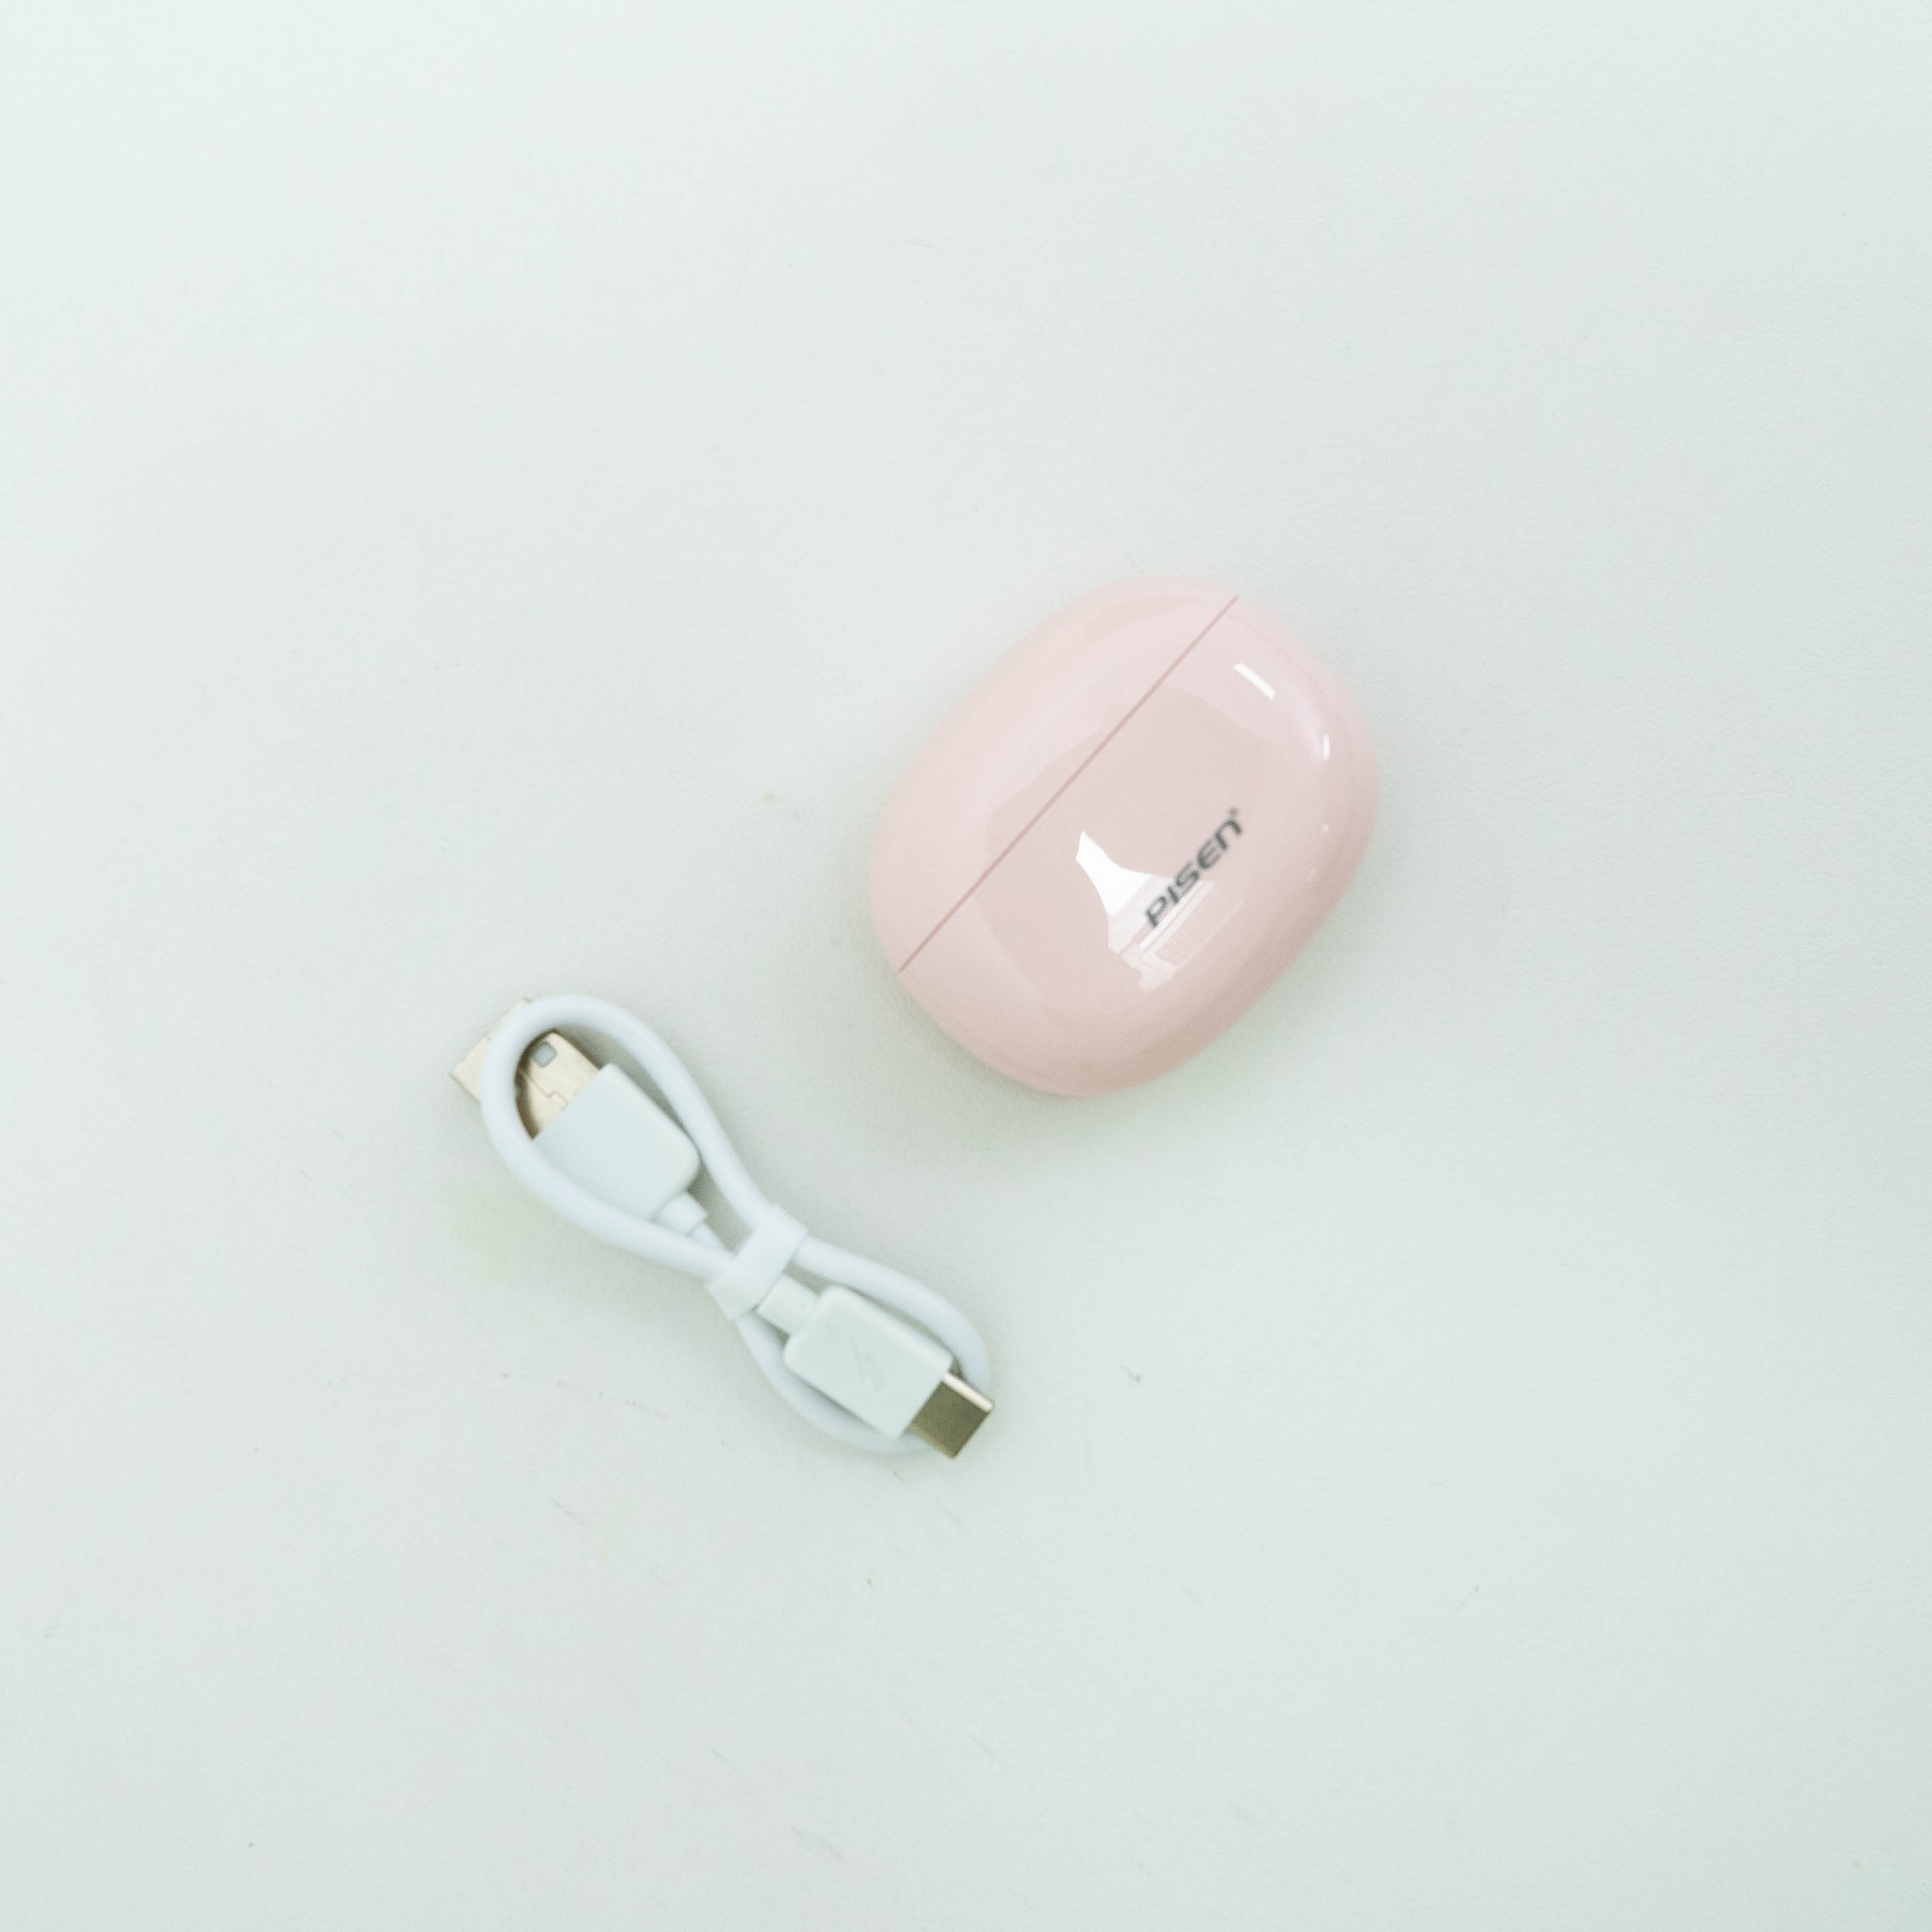 「新品初発売」 Pisen 小型Bluetooth5.3ワイヤレスイヤホン|undefined